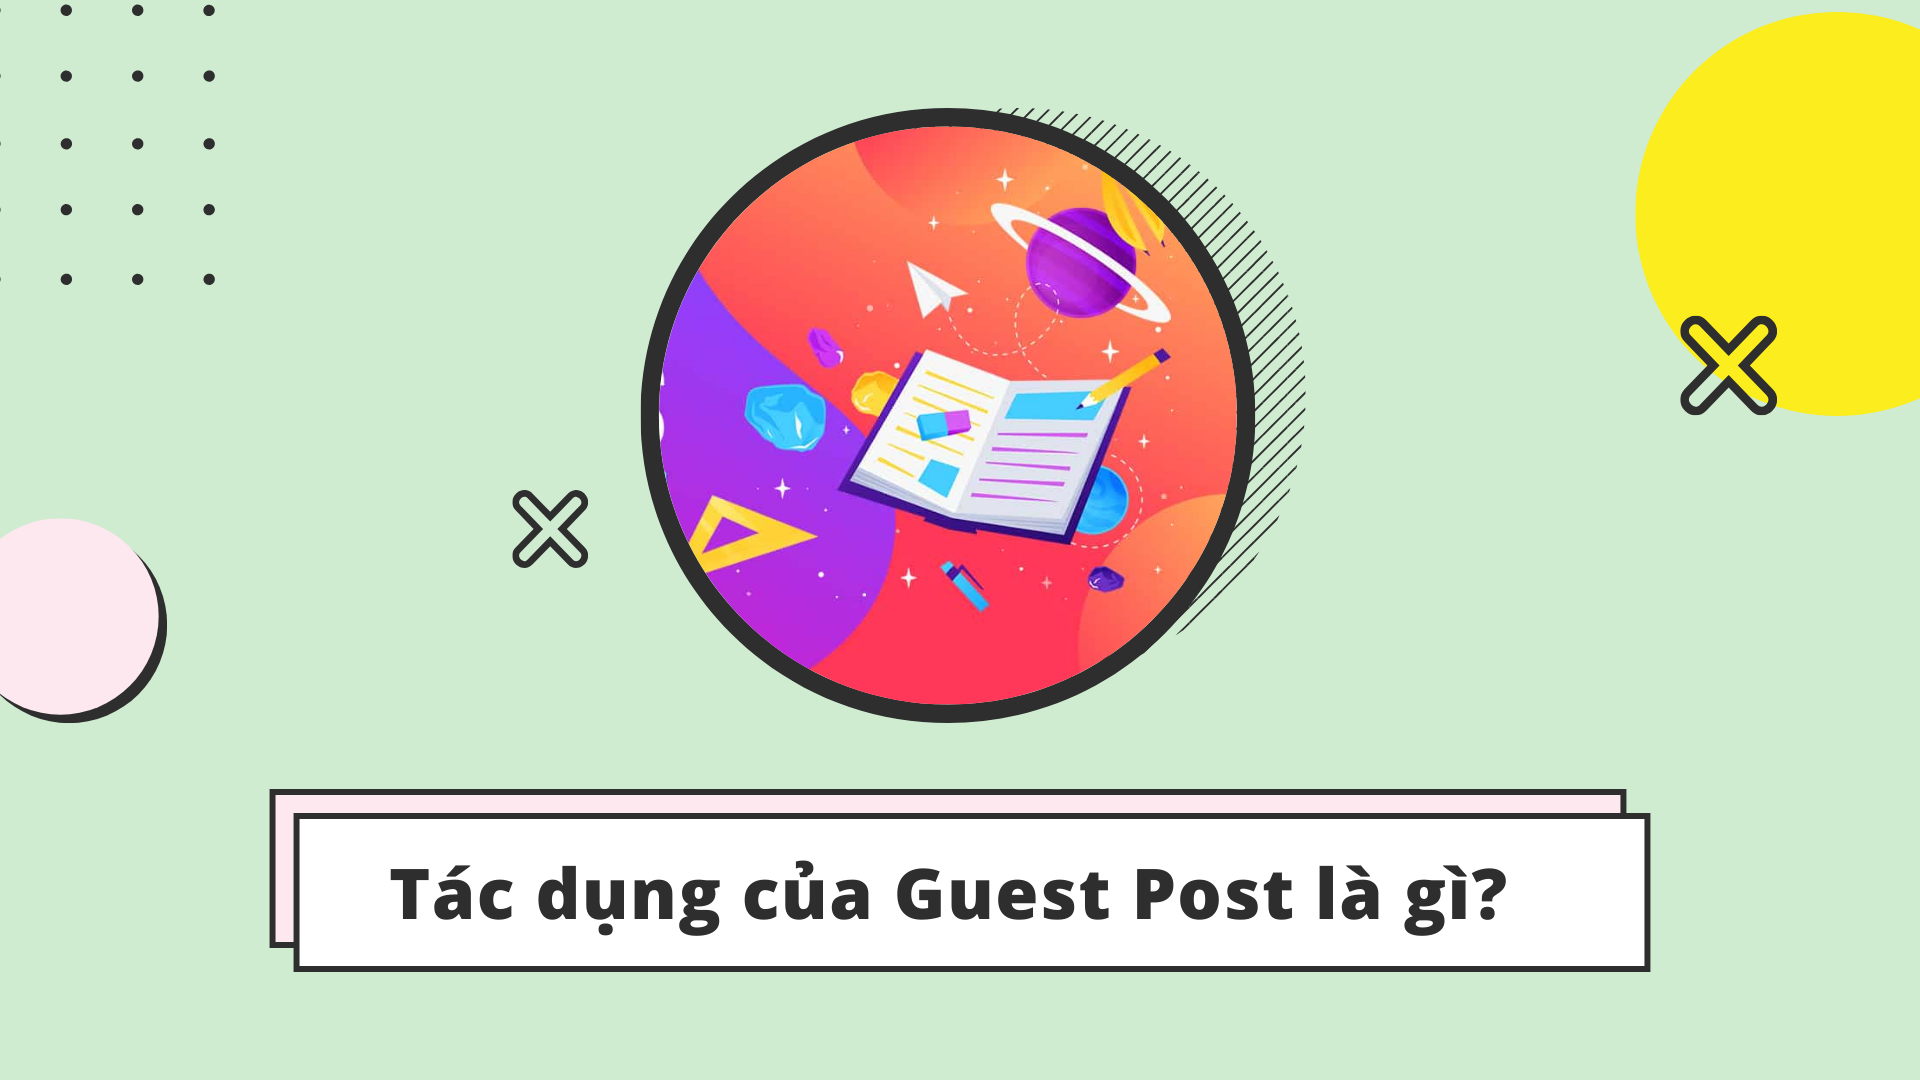 Tác dụng của guest post là gì